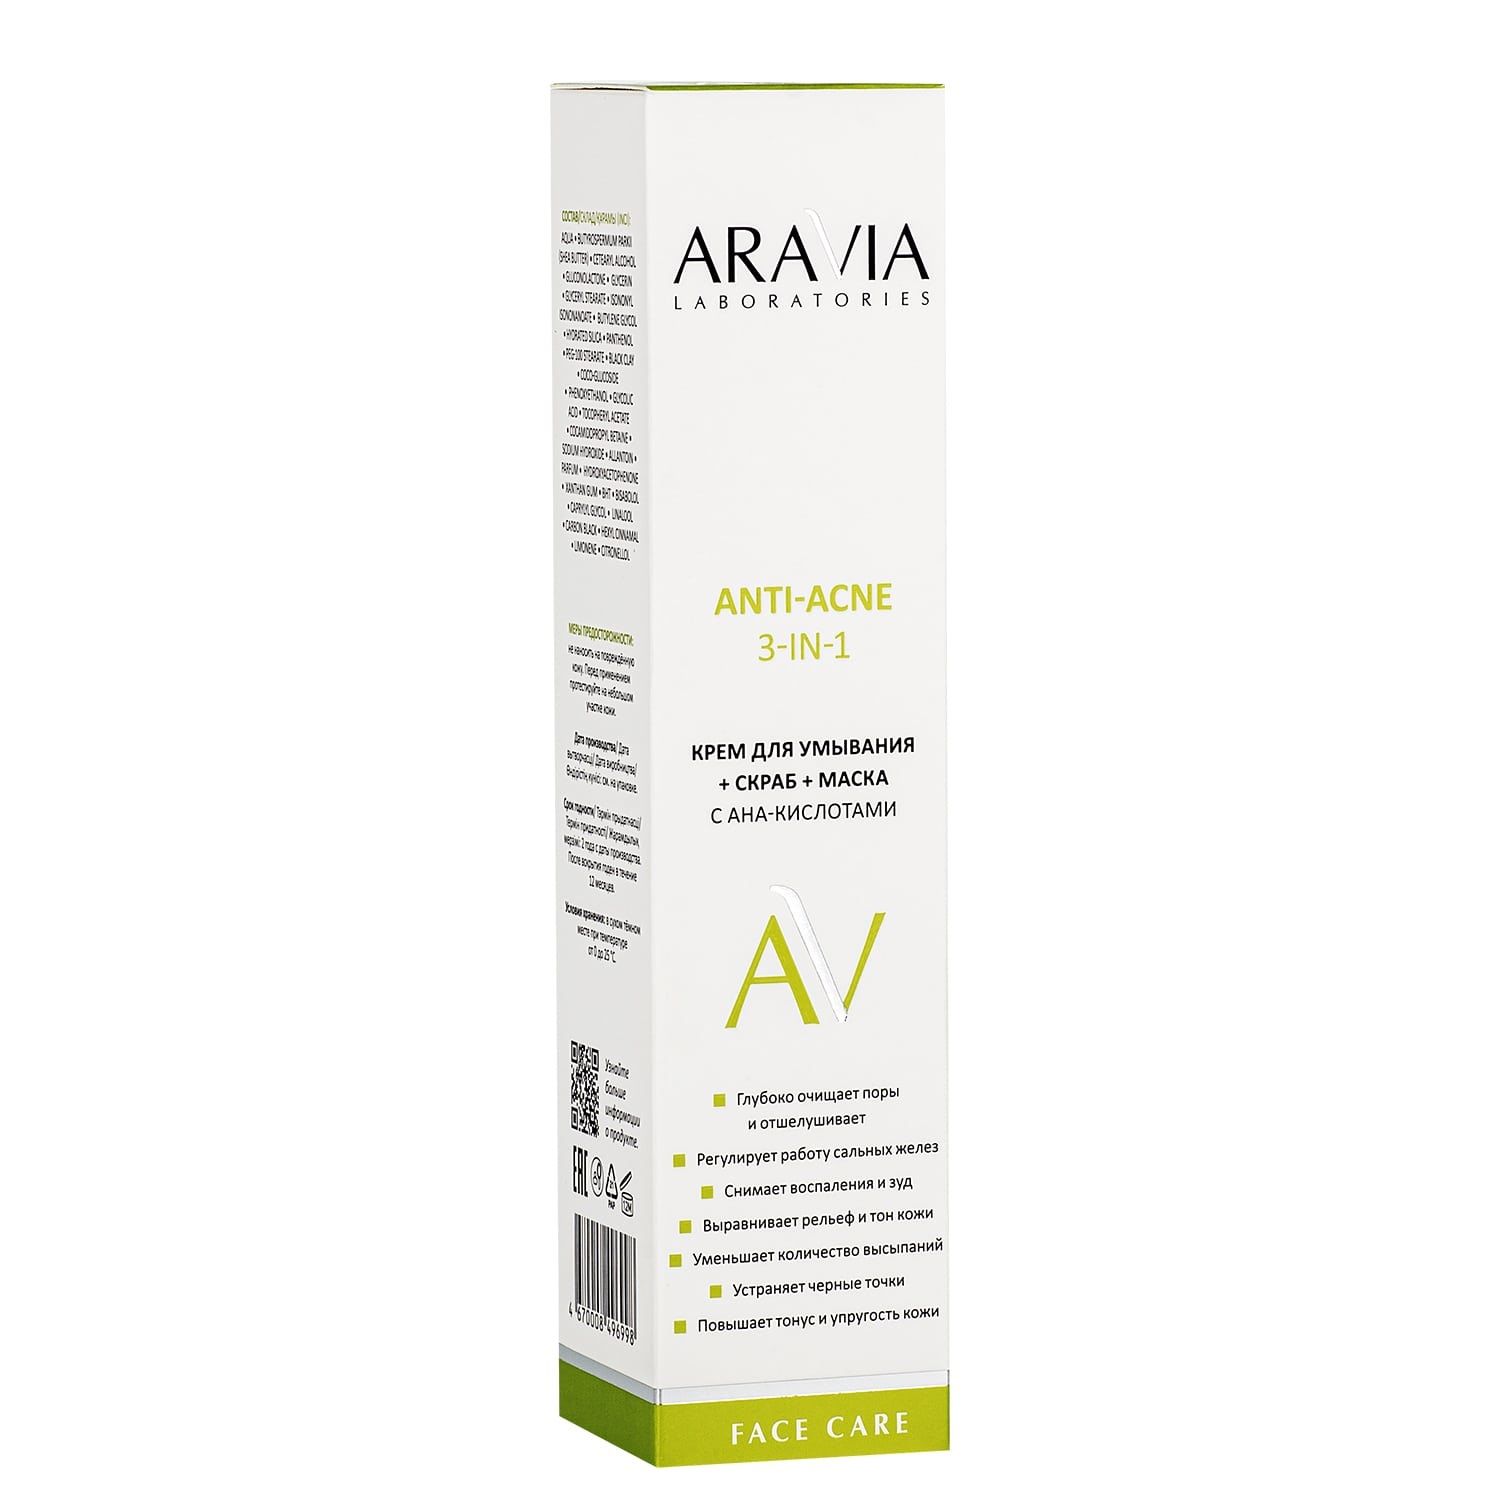 Маска с aha кислотами. Aravia Laboratories Anti-acne. Aravia Laboratories Anti-acne c aха кислотами. Aravia Laboratories Anti-acne сыворотка. Крем с Aha кислотами Аравия.